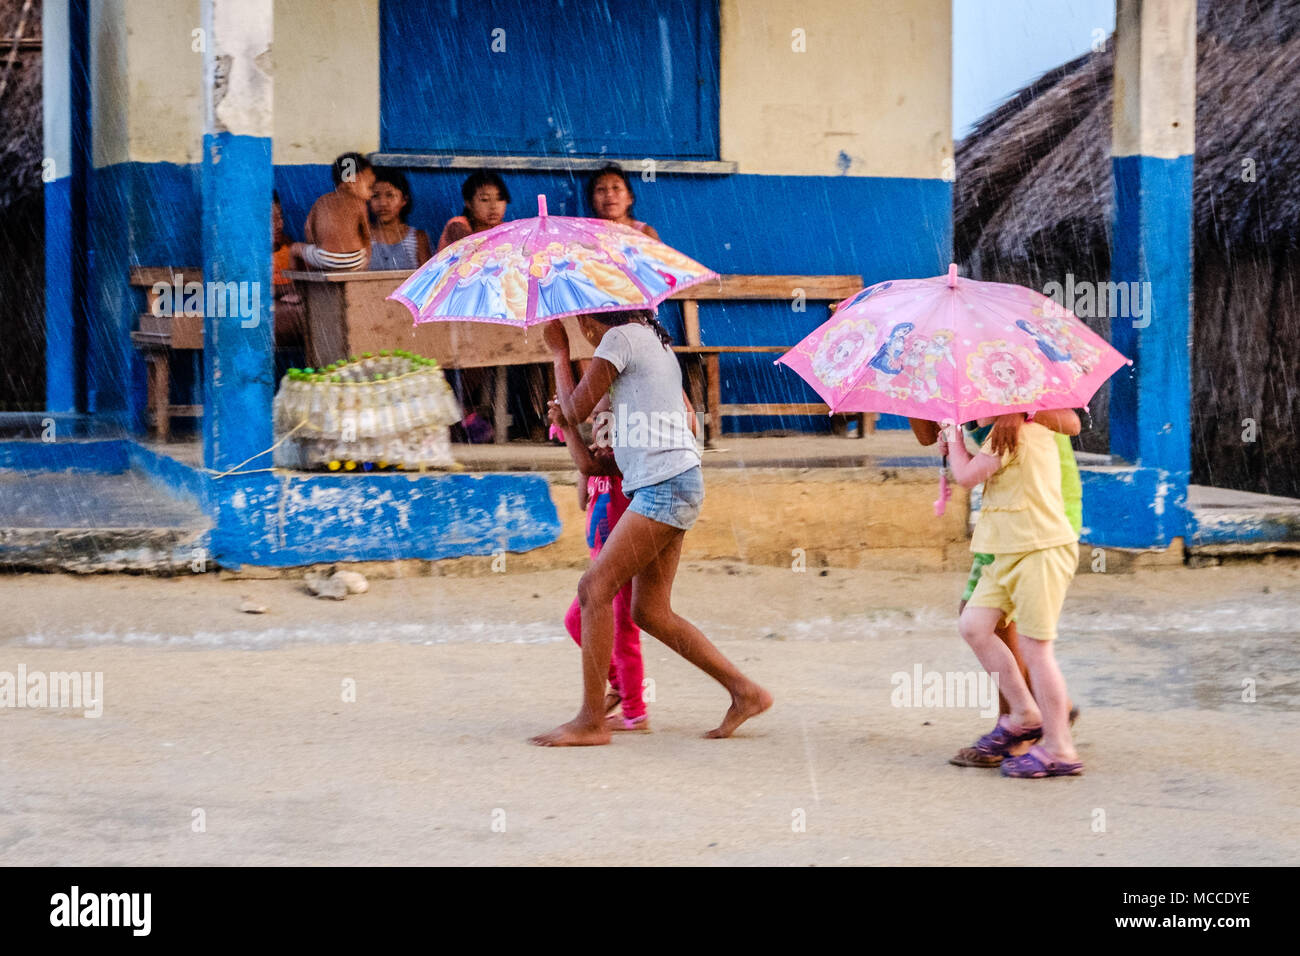 Guna Yala, Panama - März 2018: Die Gruppe der jungen Kinder mit Schirm im Regen auf der Straße in einem Kuna Dorf, San Blas Inseln Stockfoto